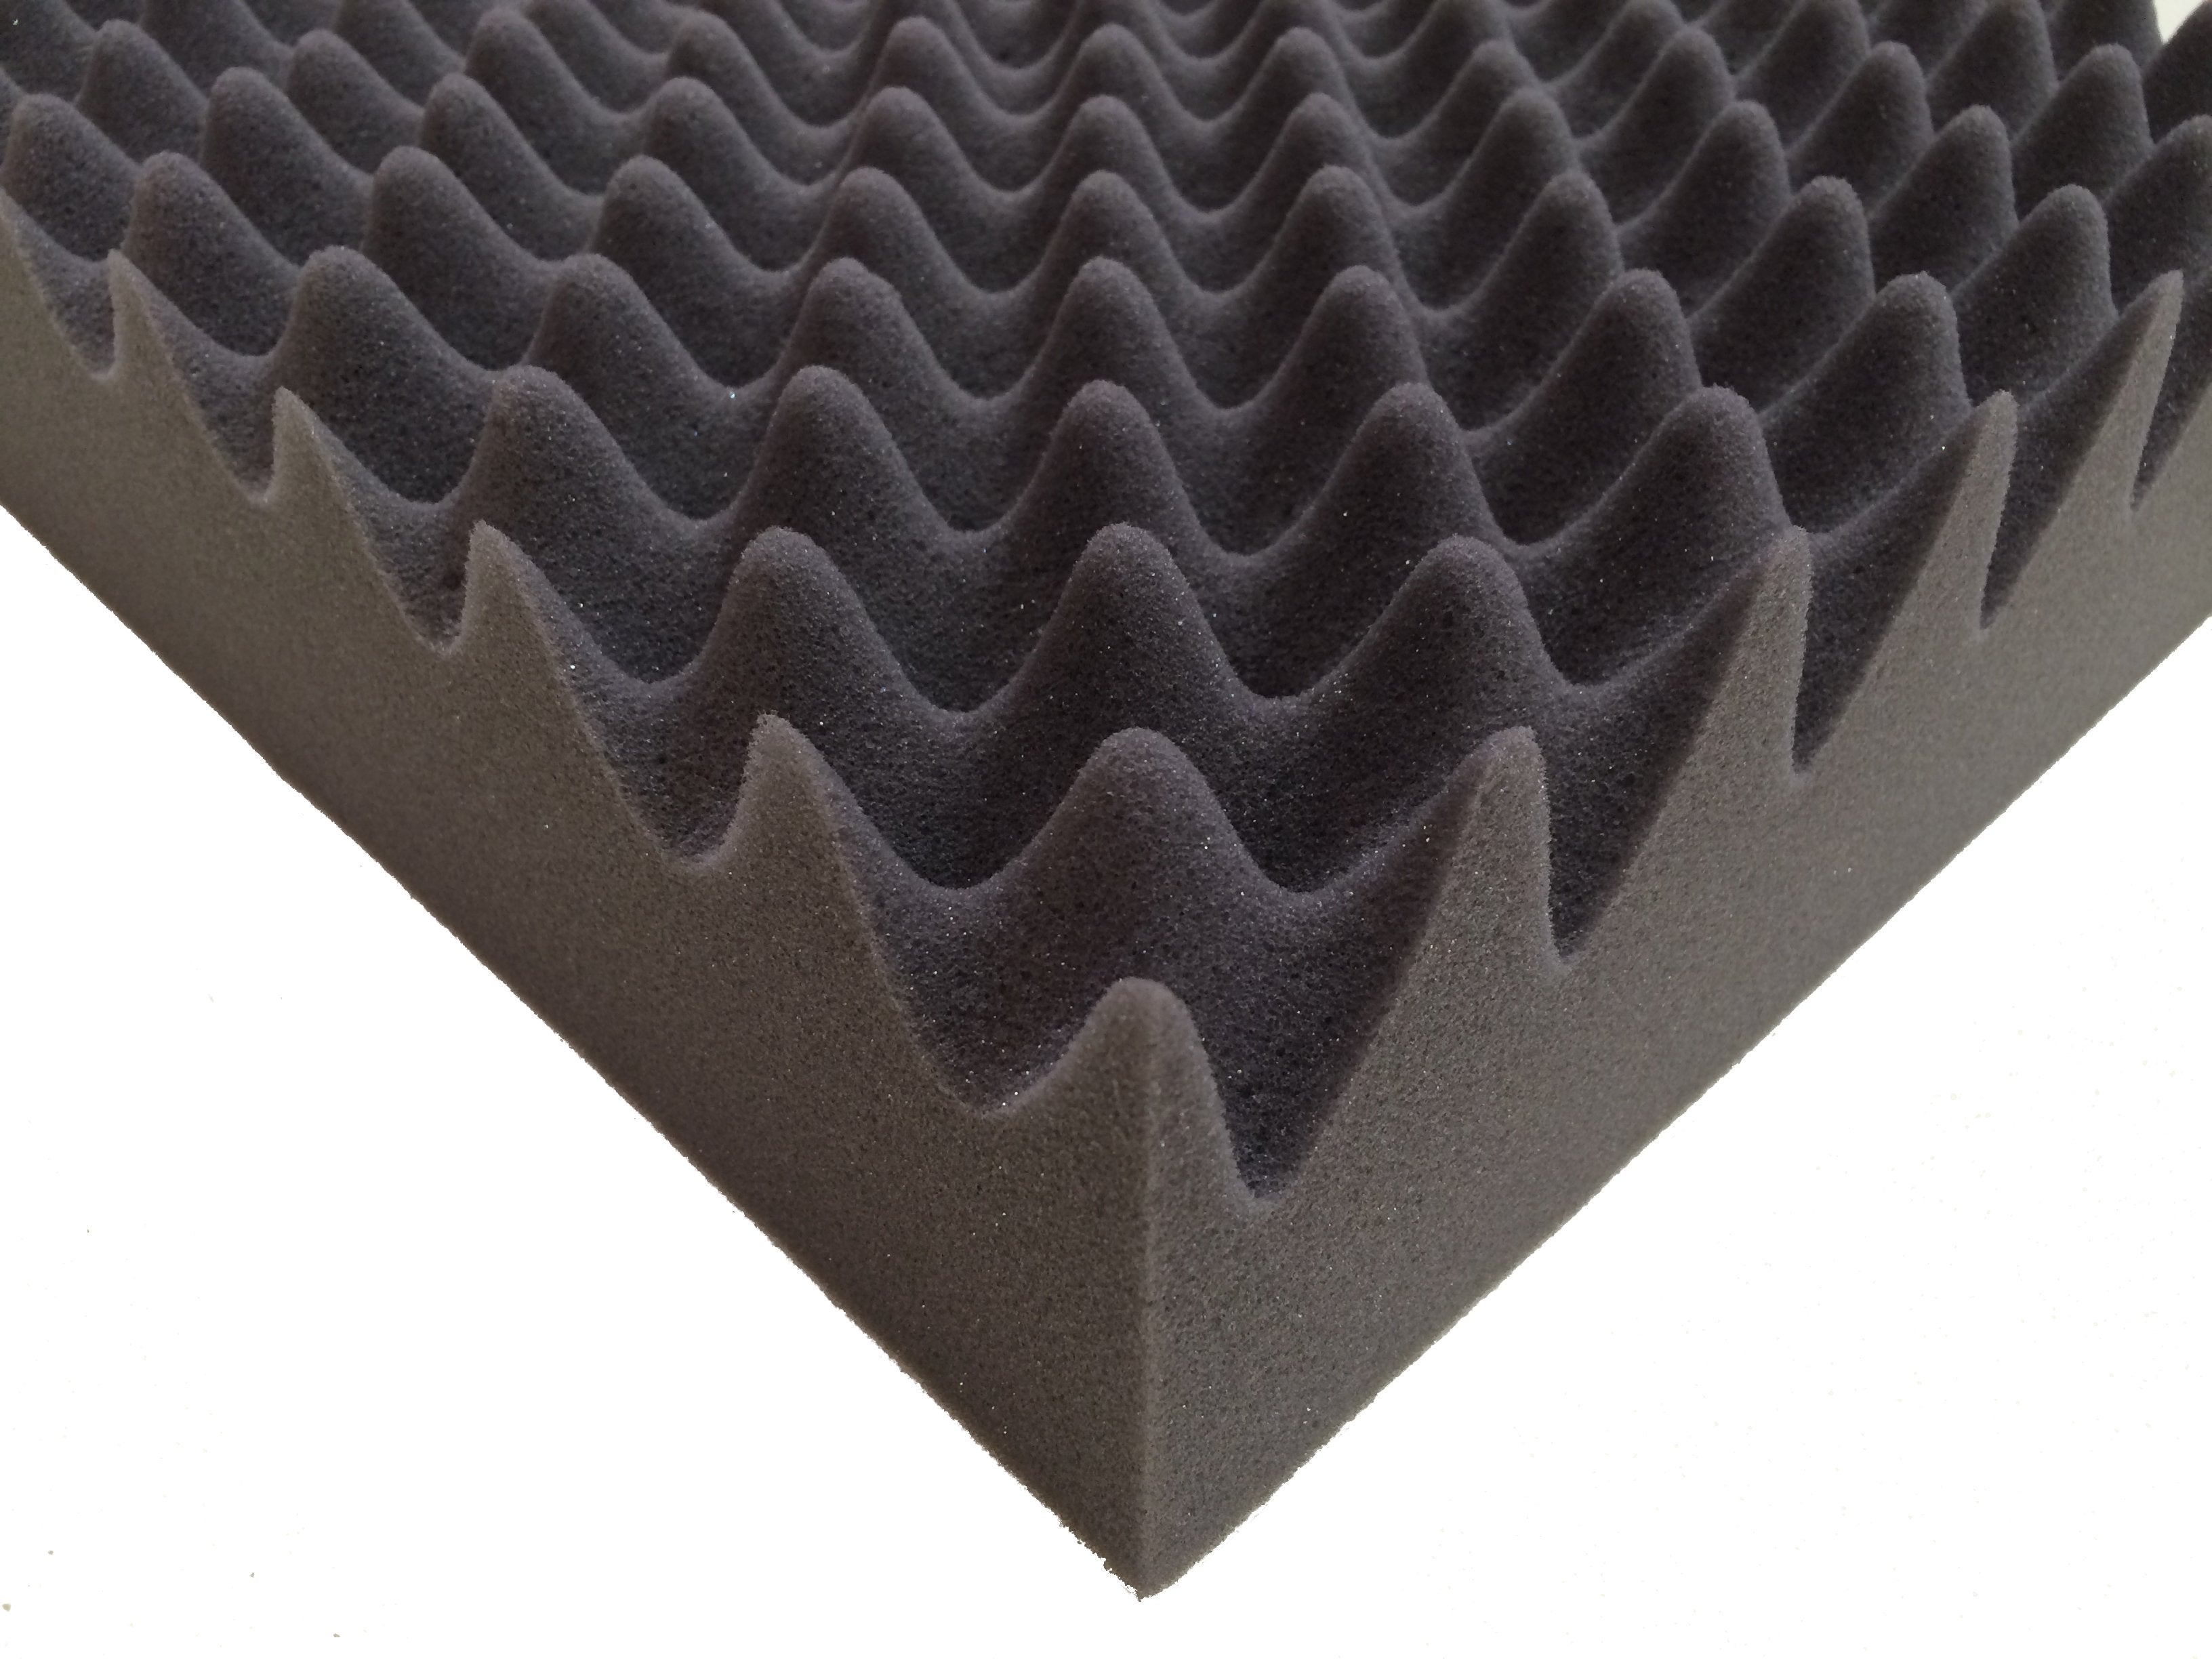 F.A.T. PRO 10" Acoustic Studio Foam Tile Kit - Advanced Acoustics